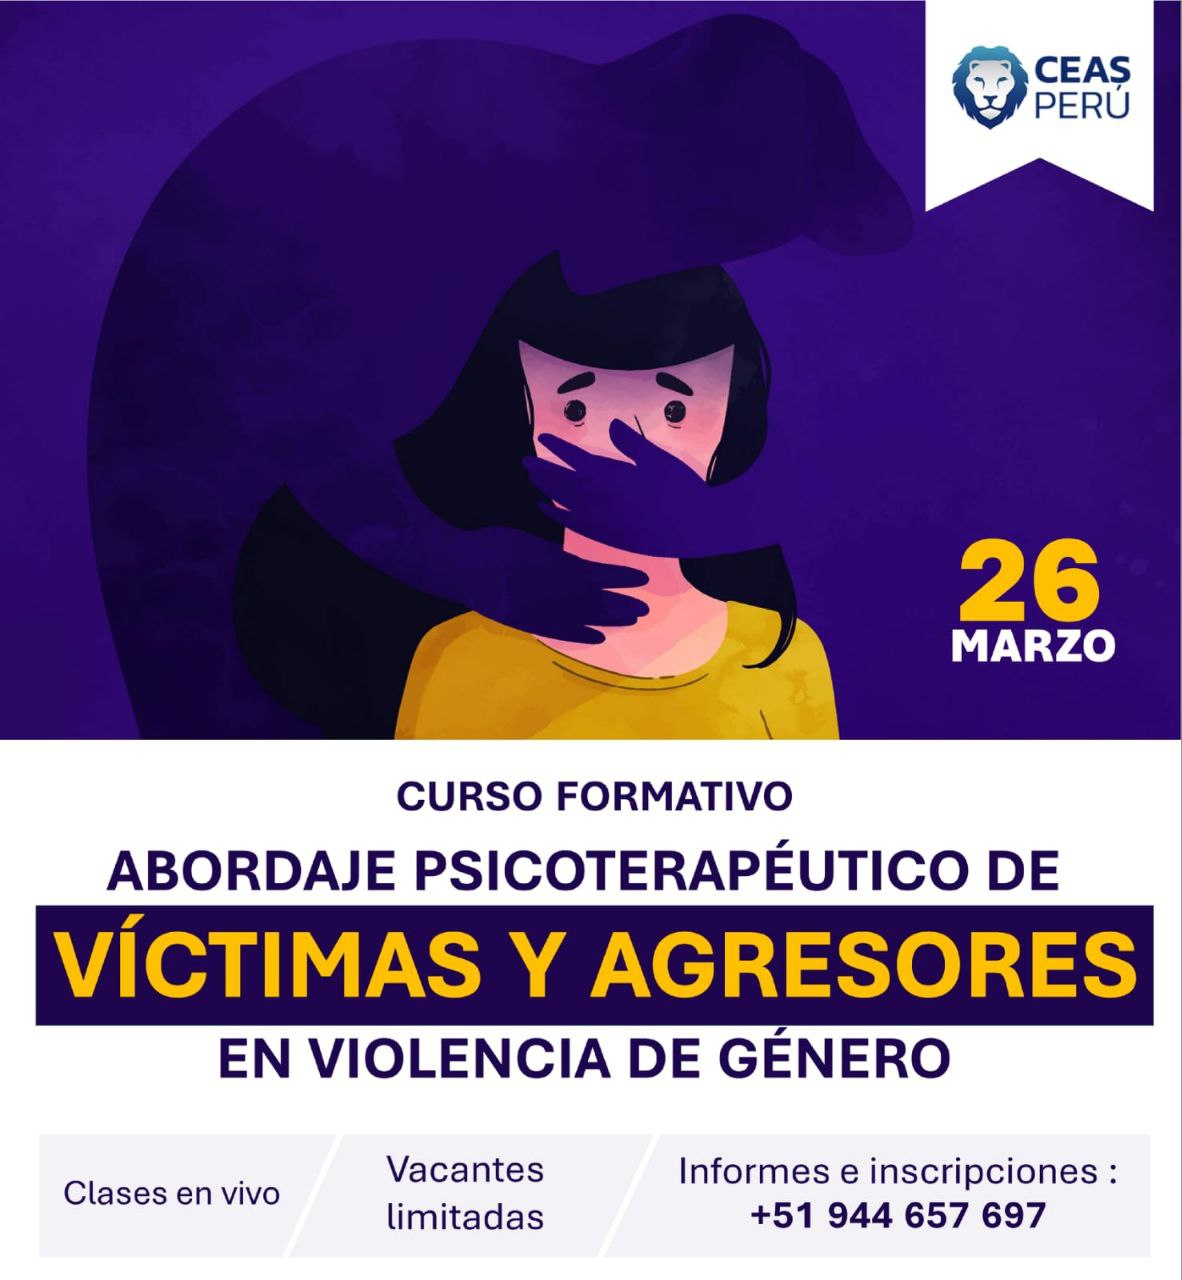 Course Image ABORDAJE PSICOTERAPÉUTICO DE VÍCTIMAS Y AGRESORES EN VG